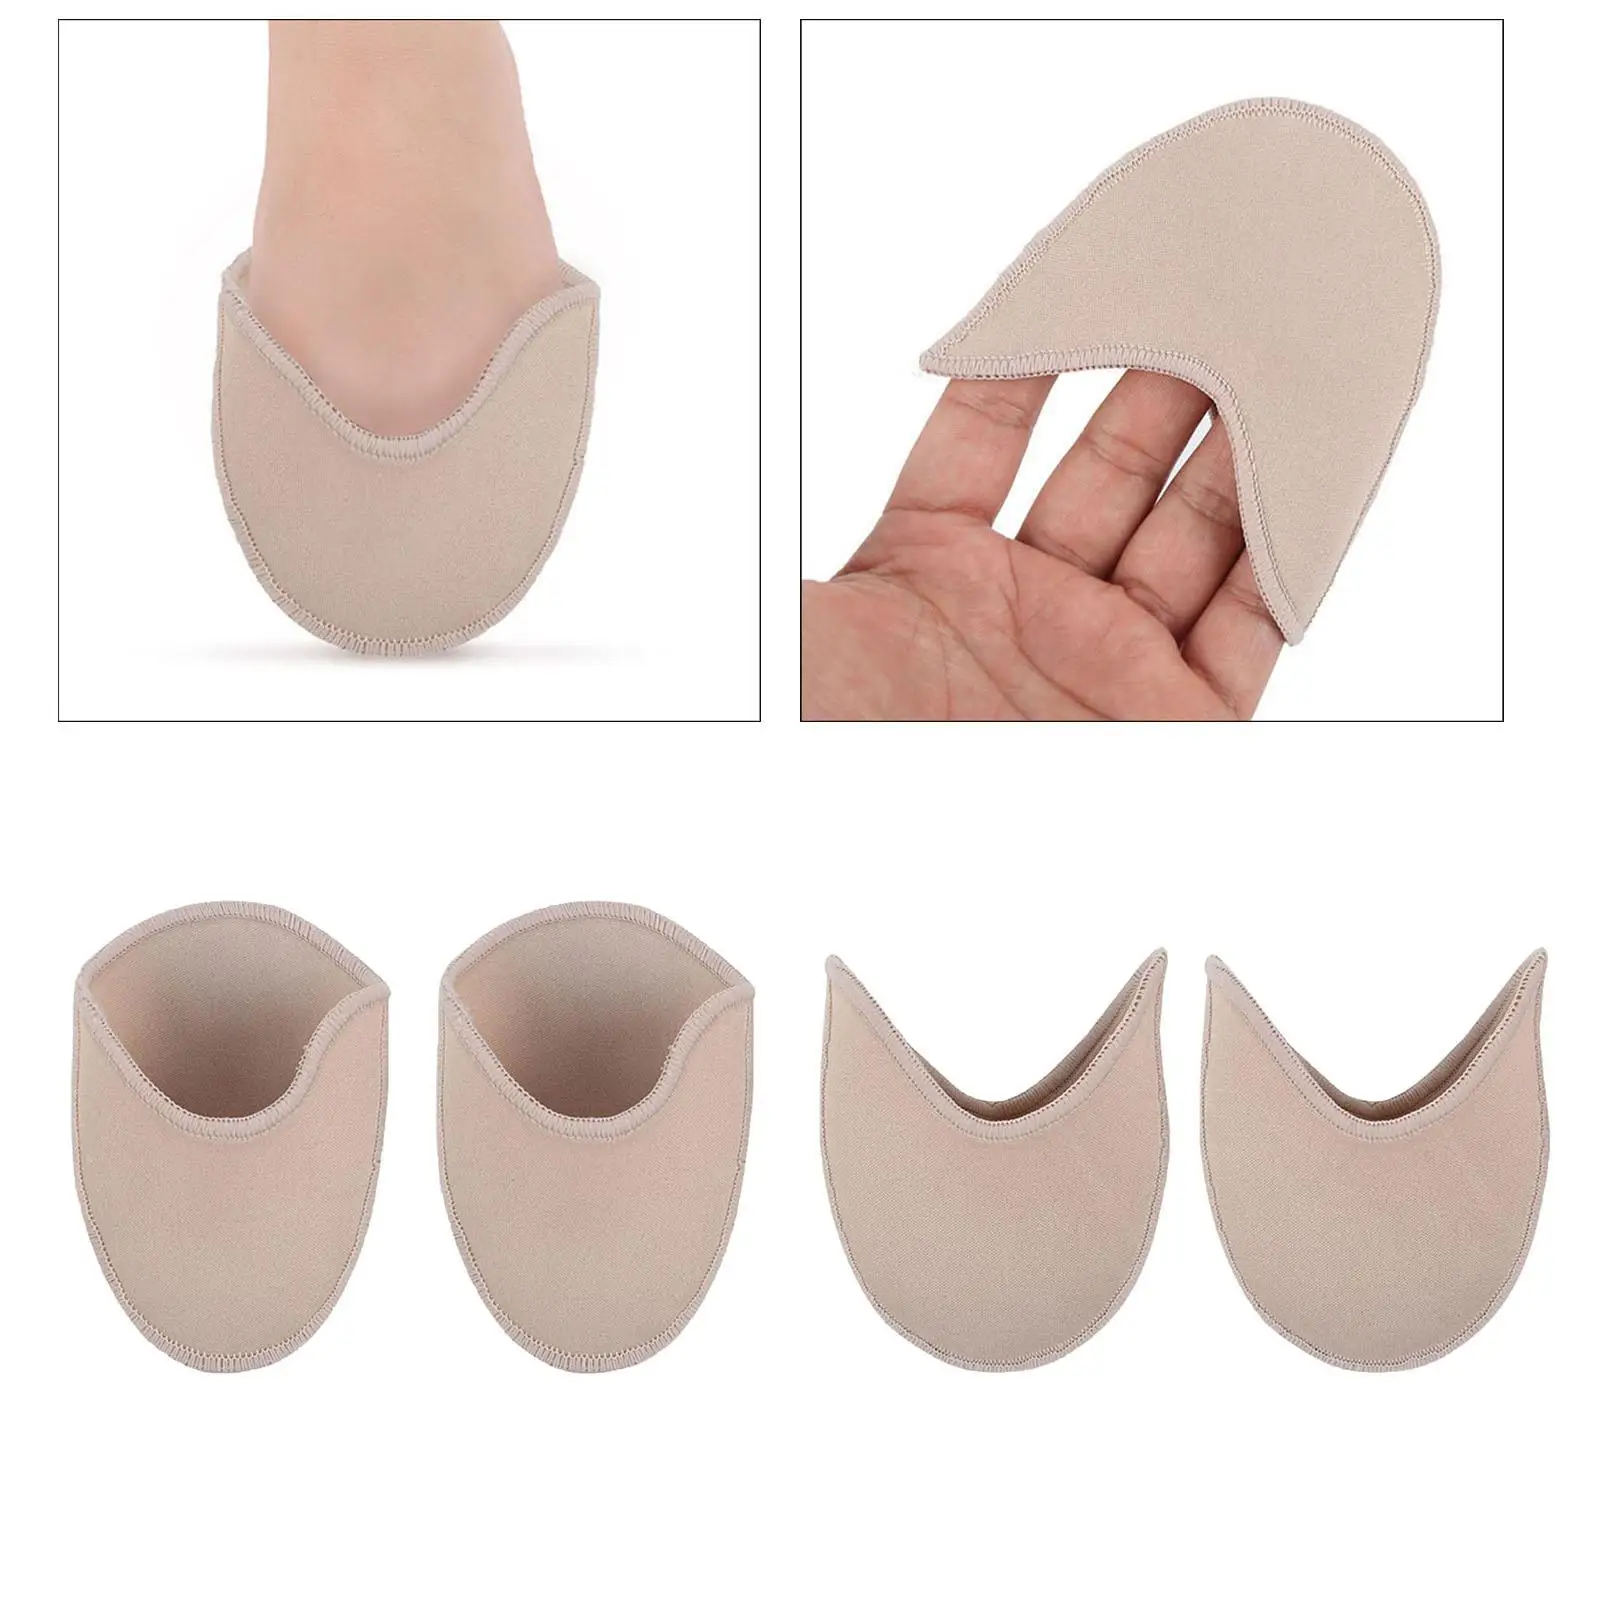 2Pcs Ballet Dance Shoe Toe Pads for Ballet Point Shoes Soft Toe Protectors